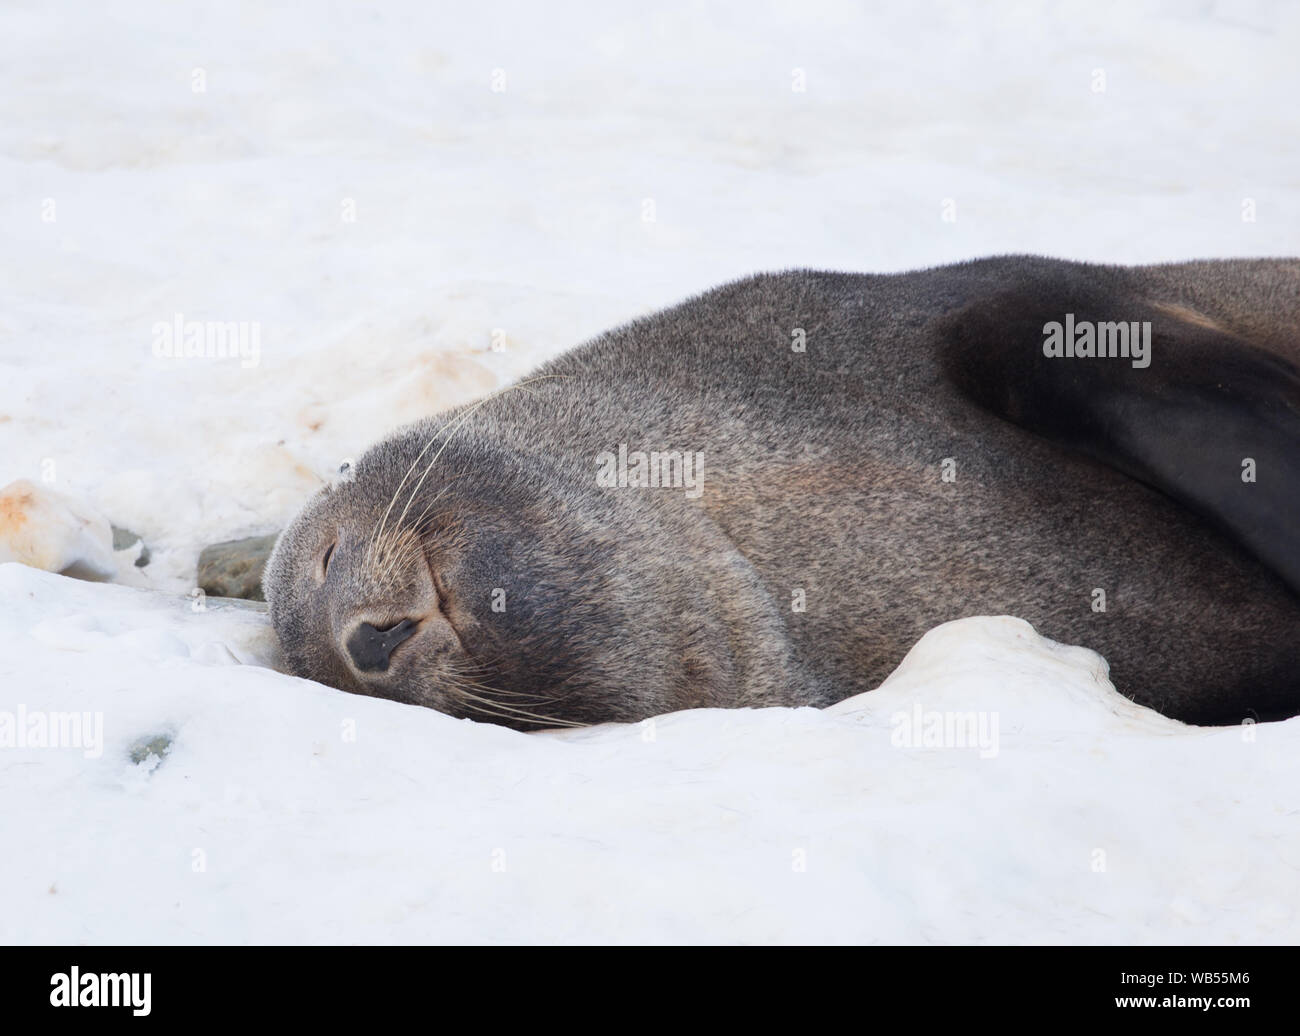 L'Antartico pelliccia sigillo, talvolta denominata Kerguelen pelliccia sigillo, noto anche come Arctocephalus gazella seduta sul ghiaccio in Antartide. Foto Stock